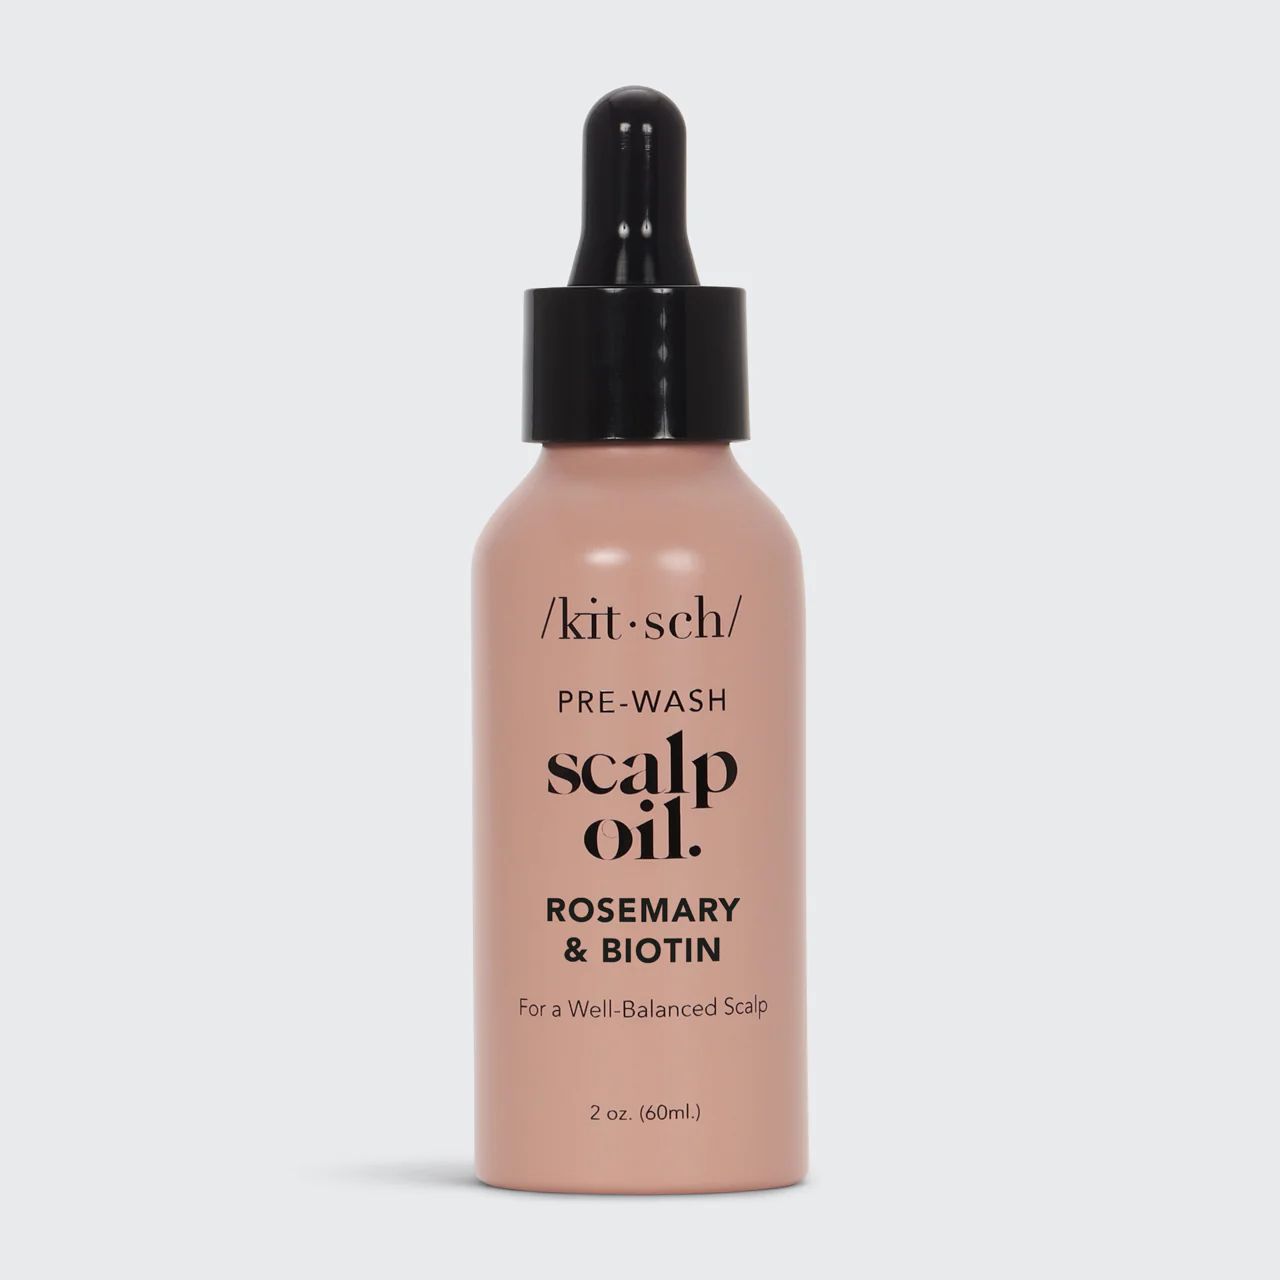 Rosemary Scalp & Hair Strengthening Oil With Biotin | Kitsch